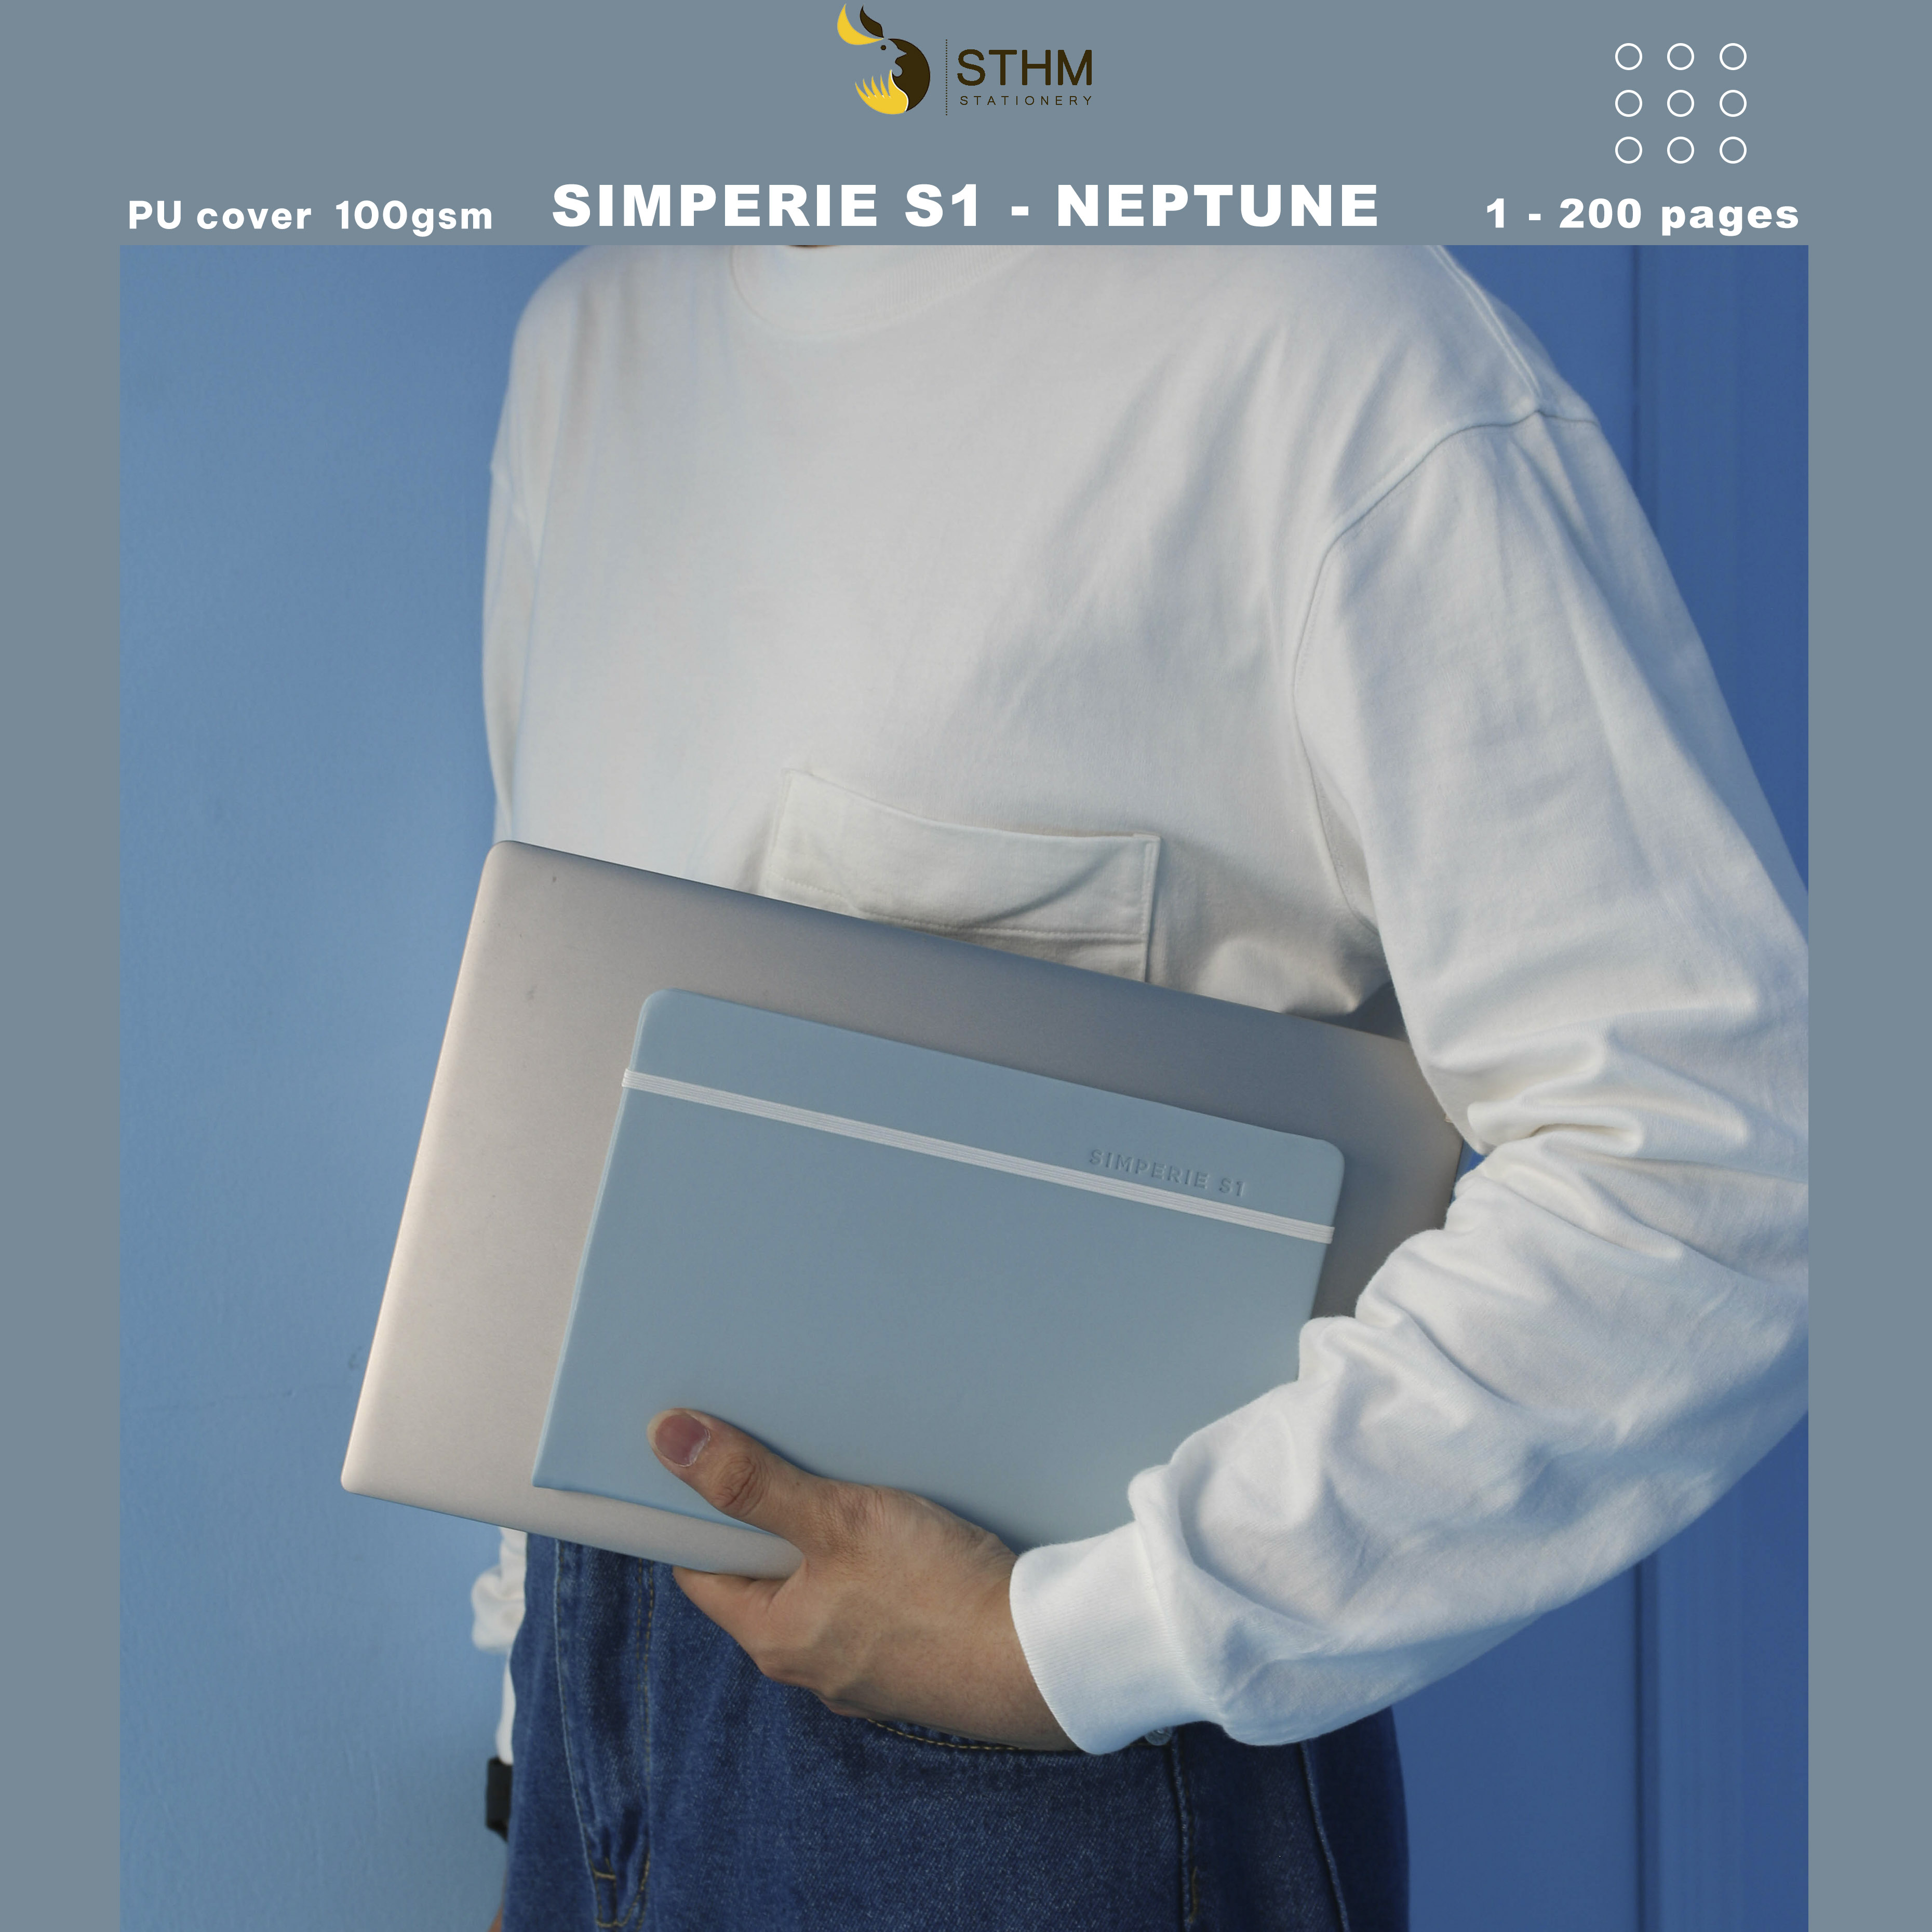 [STHM stationery] - SIMPERIE S1 - Neptune - Sổ tay bìa cứng da PU - 200 trang có đánh số